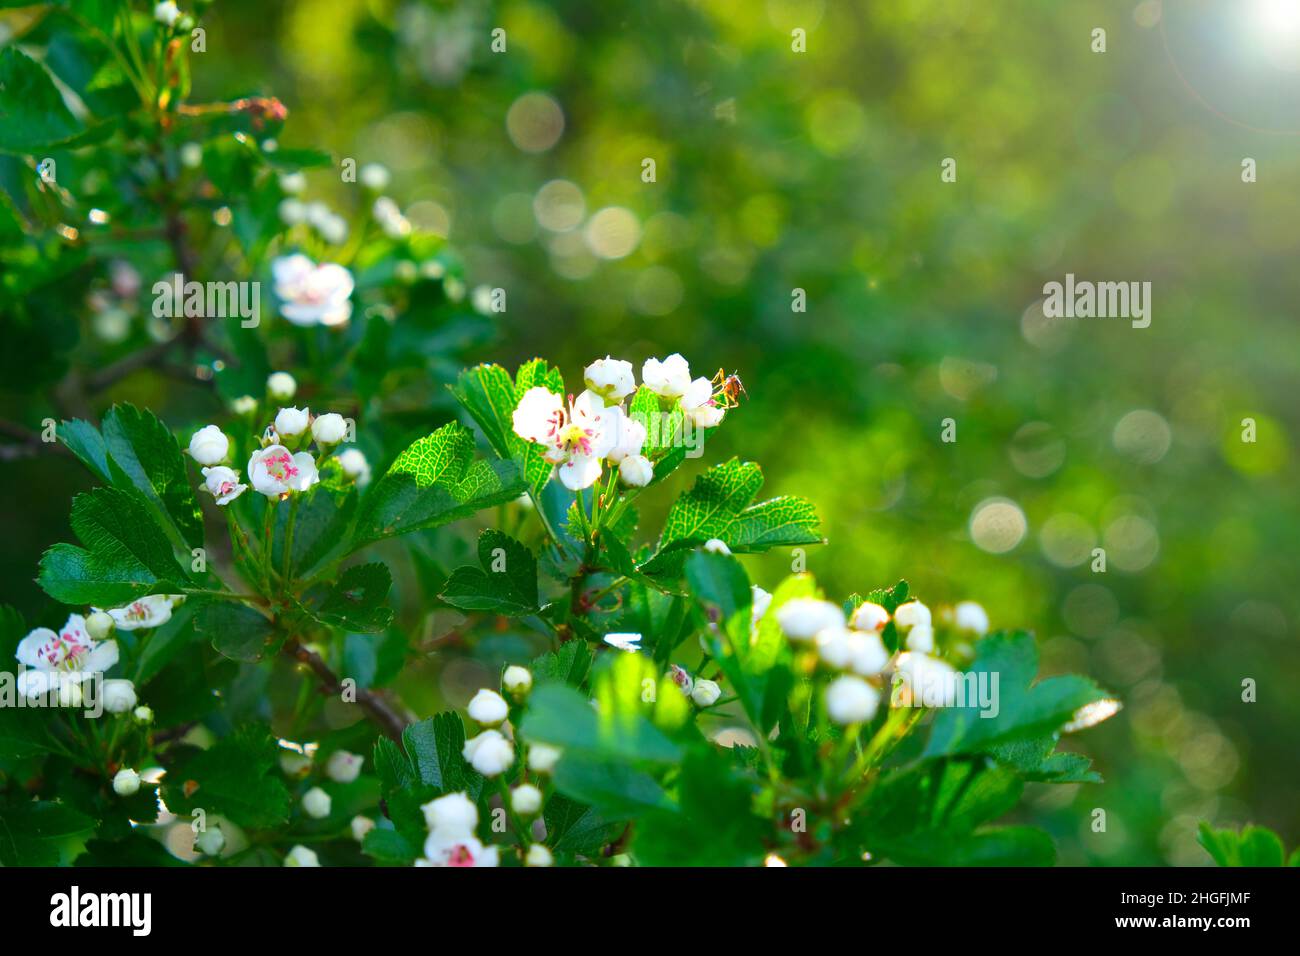 Frühling Zeit.Blumenfrühlingshintergrund. Blühende weiße Äste. Blühende Bäume und Sonnenstrahlen im blühenden Garten.Weiße Blumen. Frühlingsstimmung Stockfoto